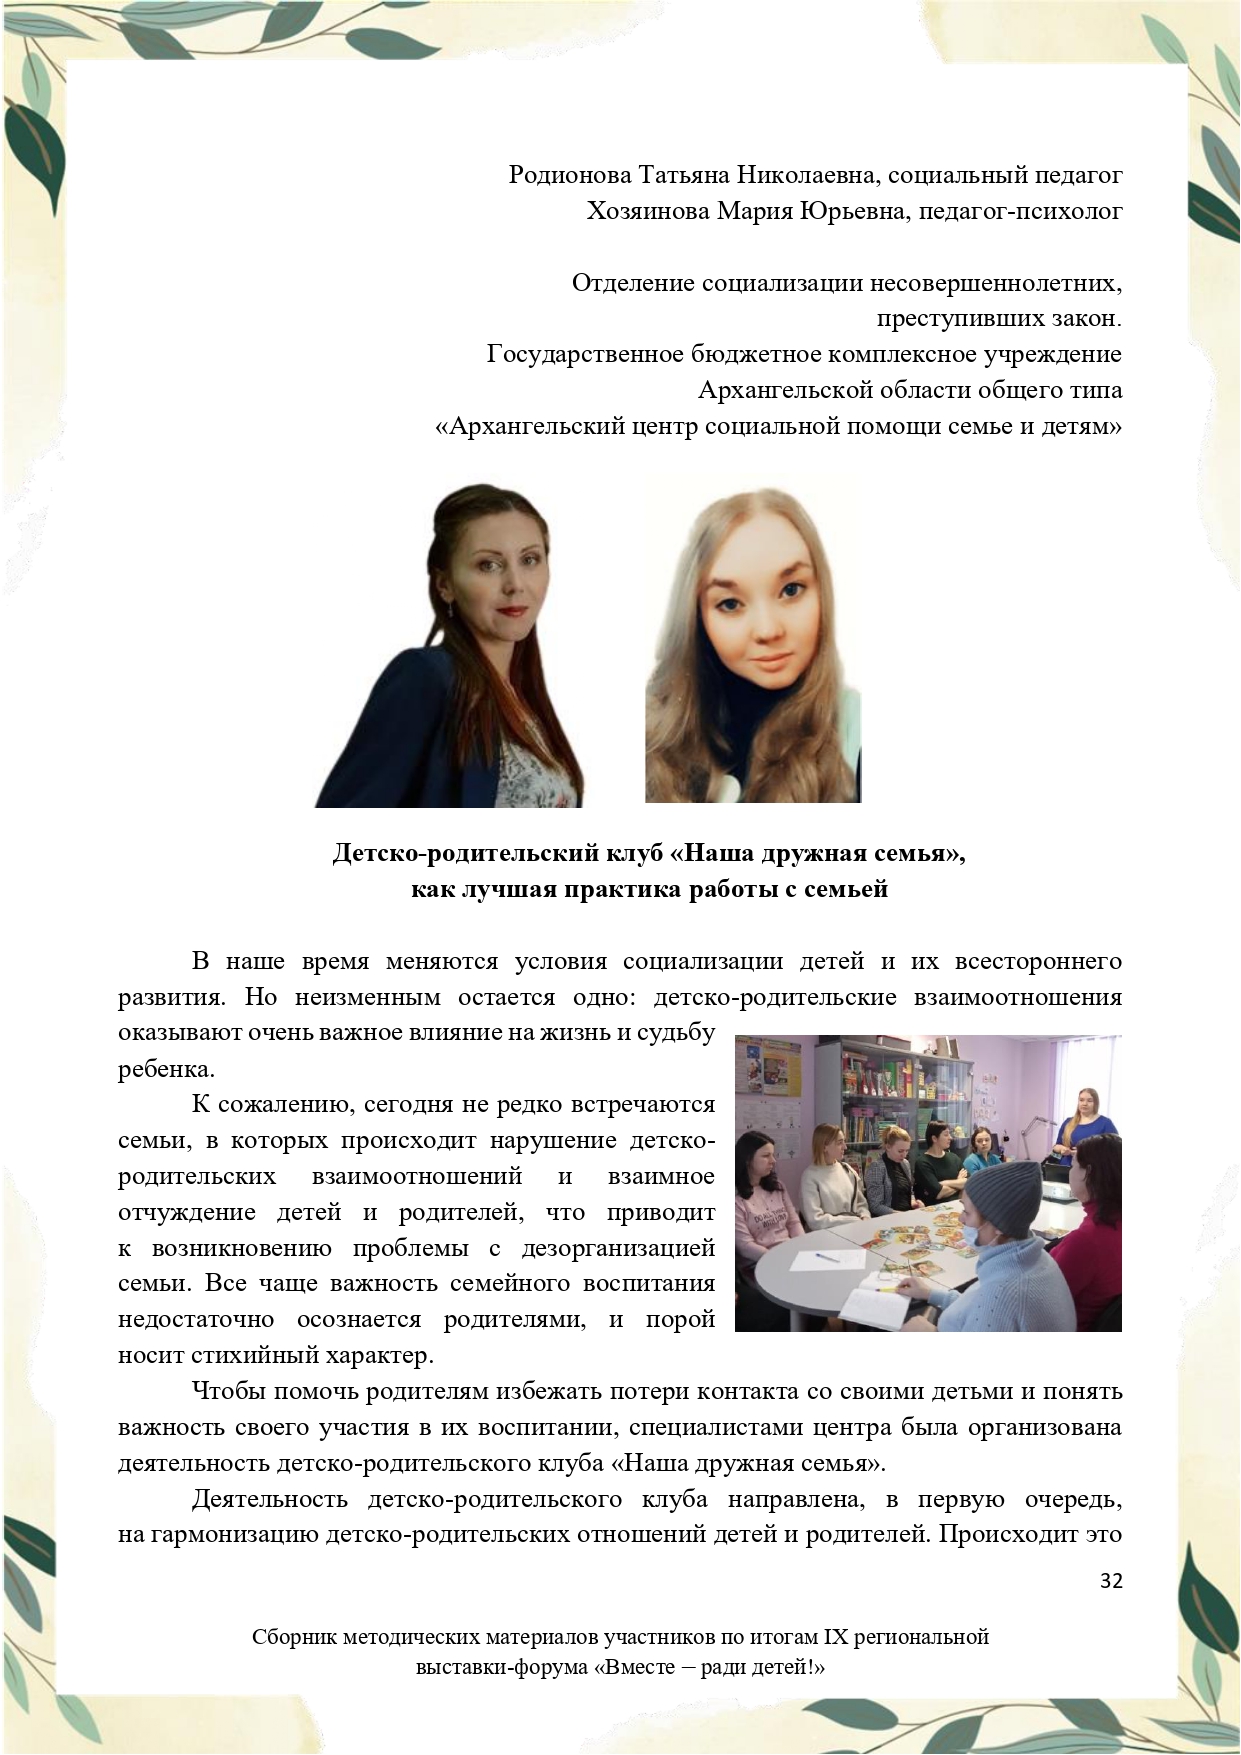 Sbornik_metodicheskikh_materialov_uchastnikov_IX_regionalnoy_vystavki-foruma_Vmeste__radi_detey_33__2023_page-0032